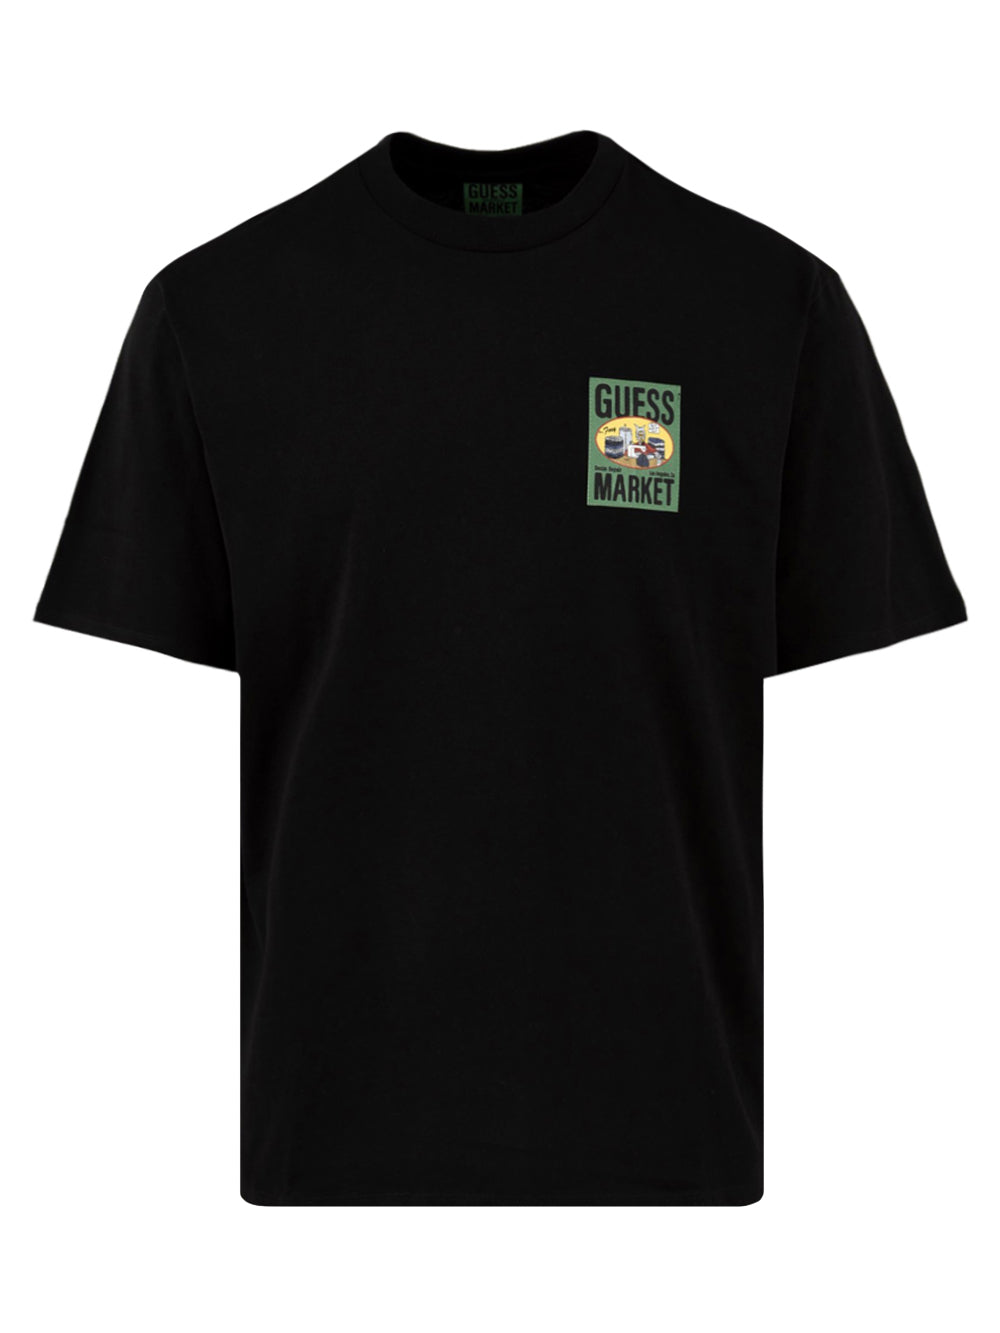 T-shirt Uomo Nera in cotone con doppia stampa